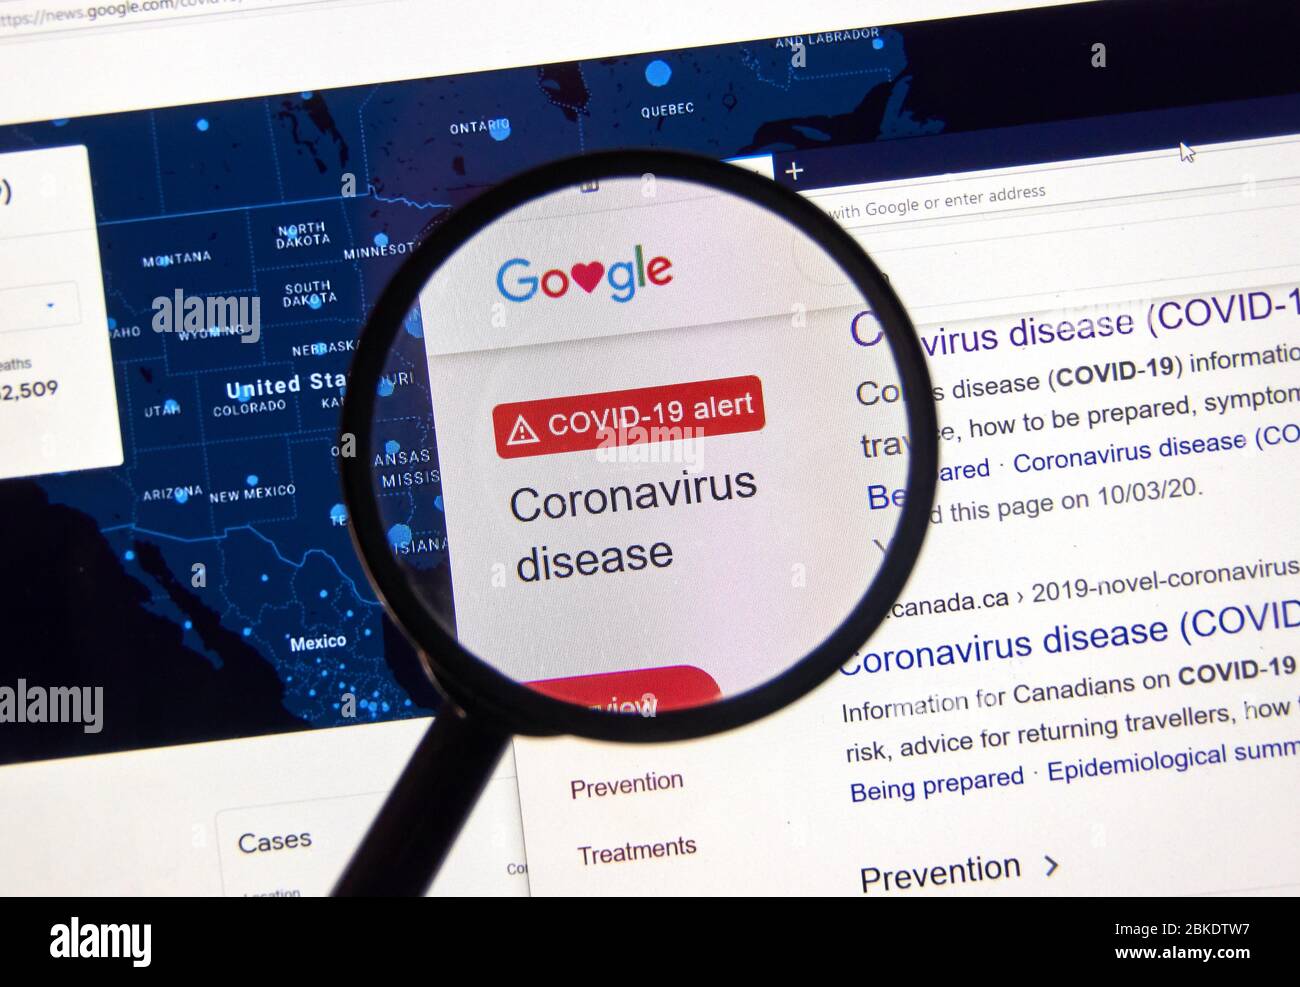 Montreal, Canada - 26 aprile 2020: SOS Alert per quanto riguarda Coronavirus COVID-19 su google. La malattia da coronavirus 2019 COVID-19 è una malattia infettiva causata Foto Stock